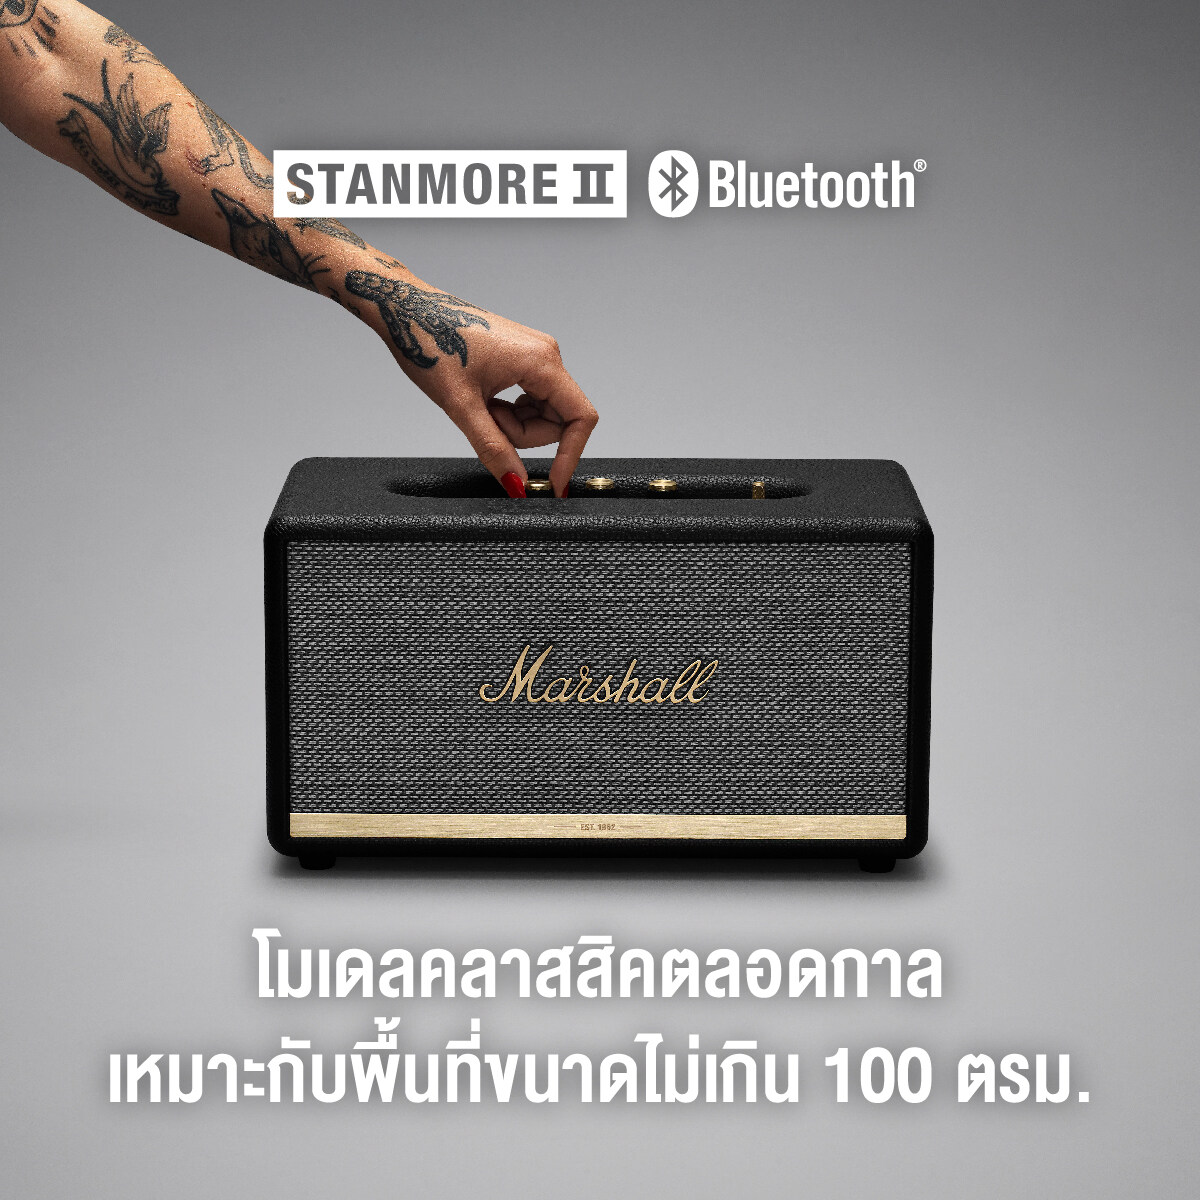 ลำโพงบลูทูธ Marshall Stanmore II Bluetooth สีดำ - รับประกัน 1 ปี + ส่งฟรีทั่วไทย (ลำโพงบลูทูธ, ลำโพงบ้าน,